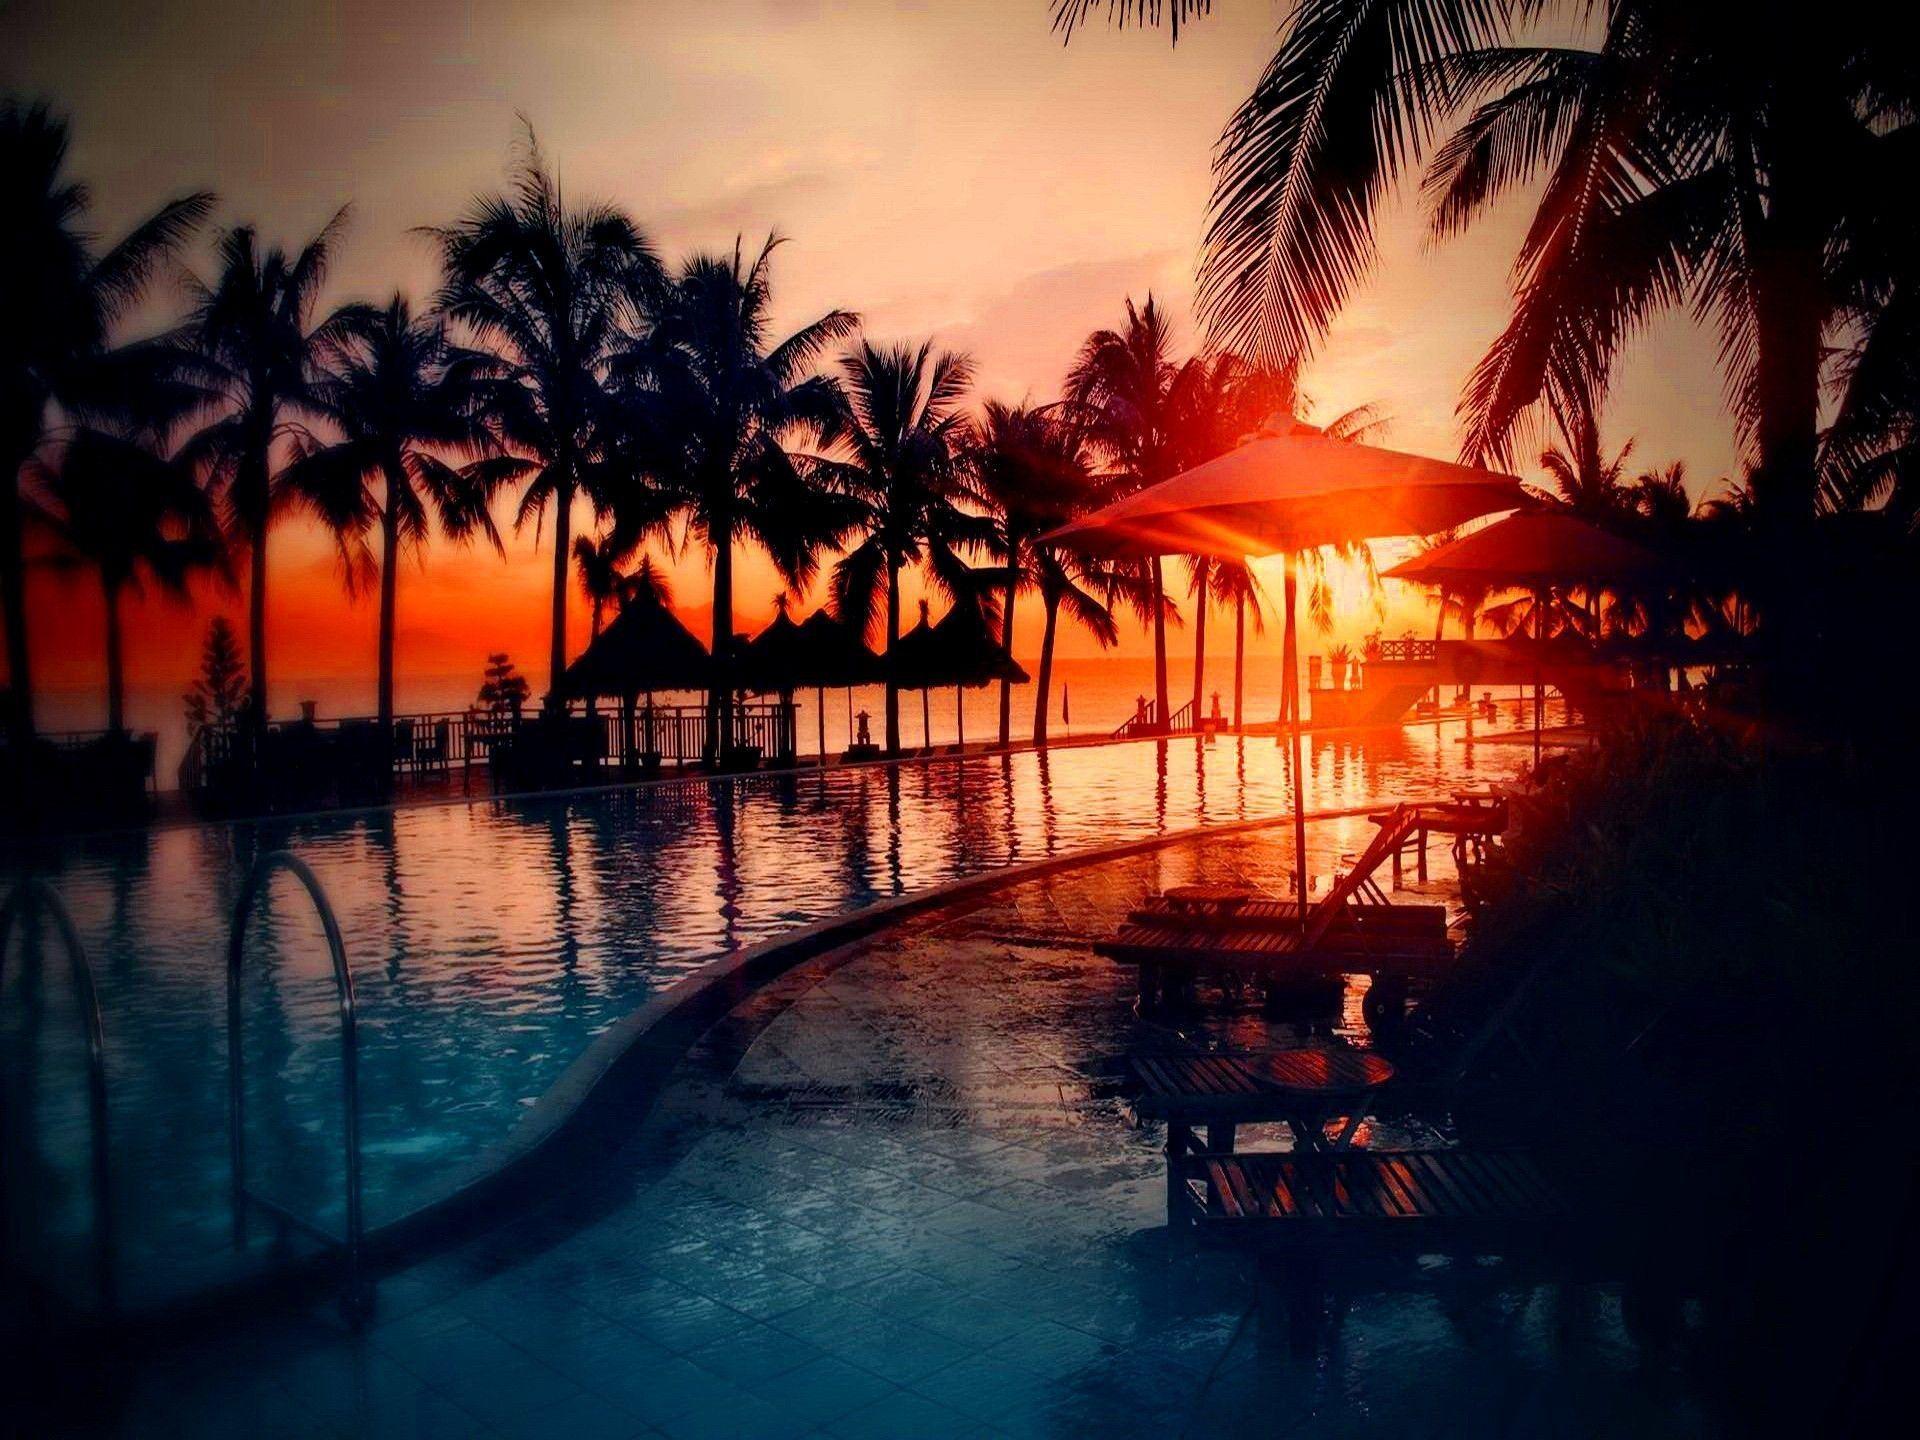 Tropical Island Sunset Wallpaper